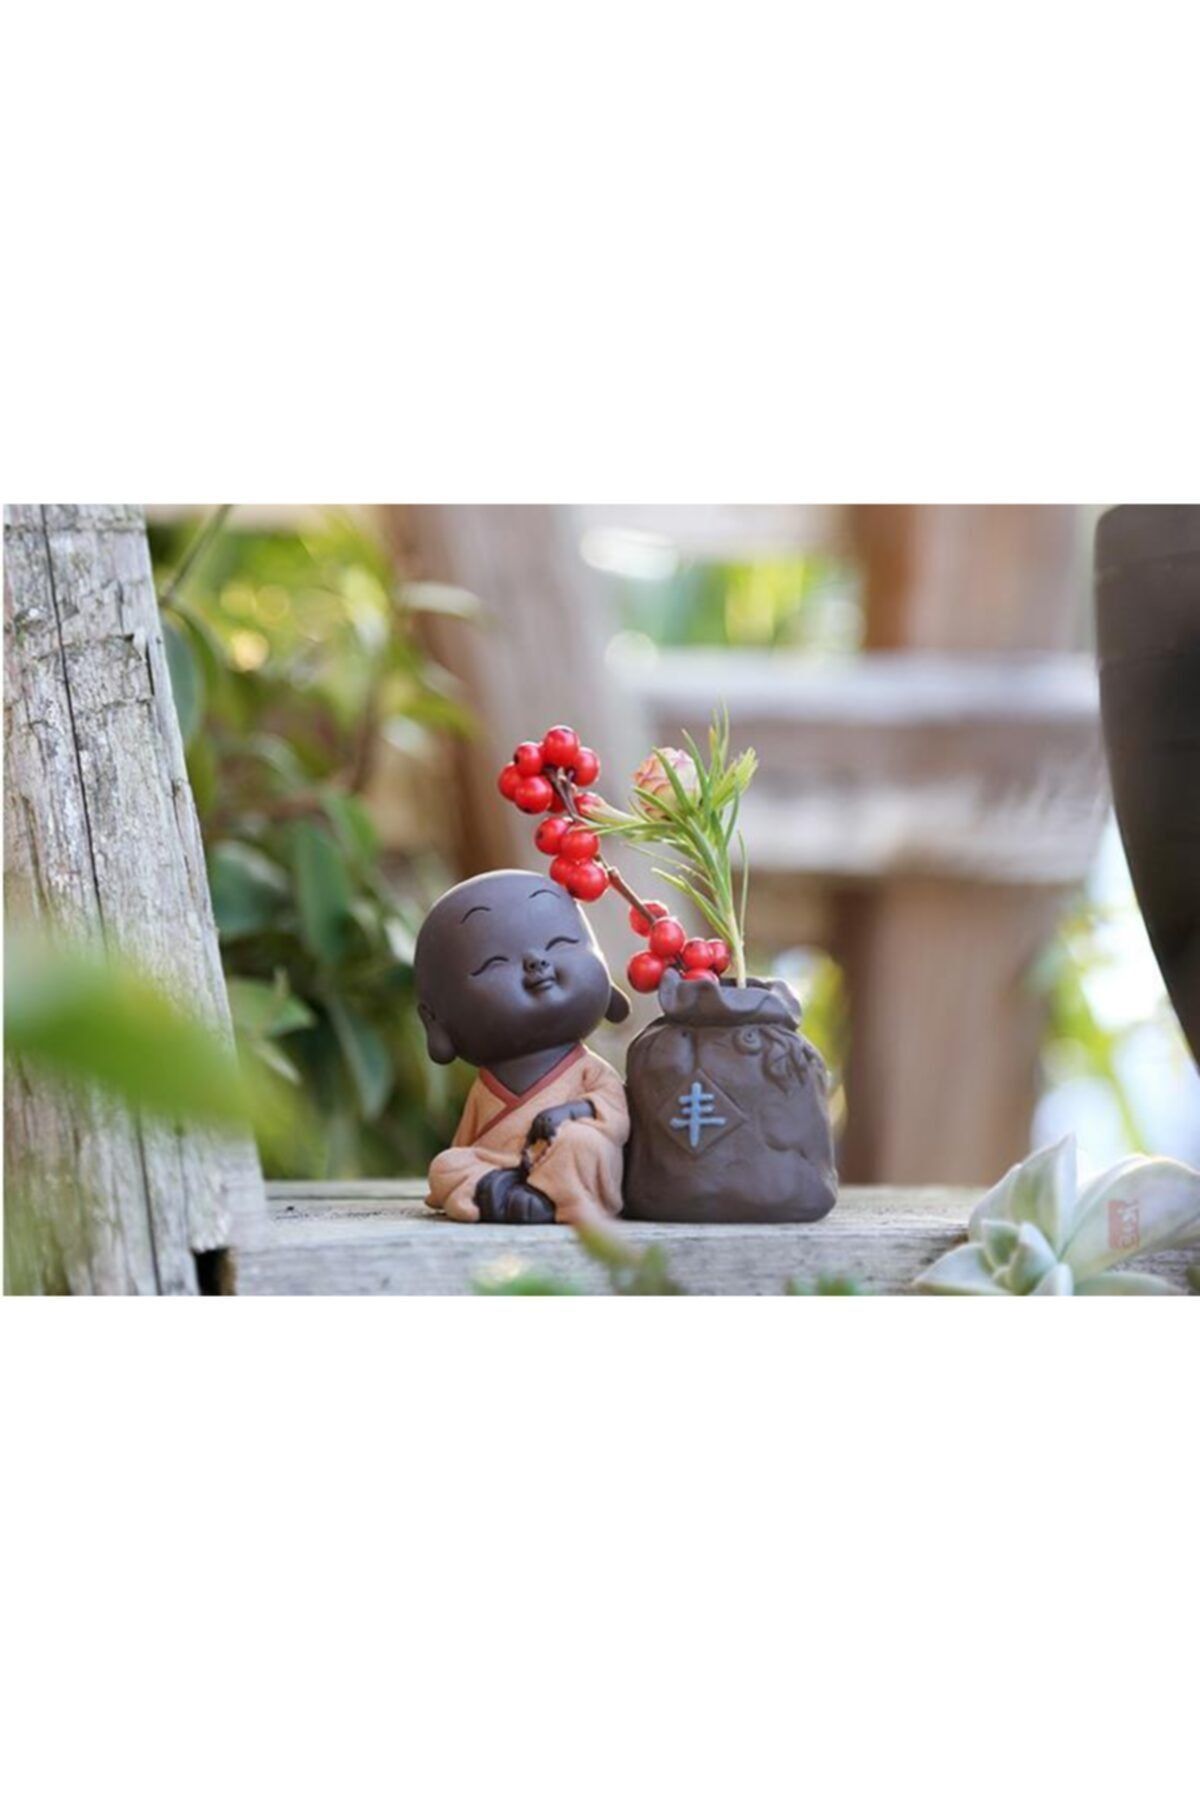 FLORADA Biblo Tütsülük Süs Hediye 8cm Mini Keşiş Buda Çay Seti Minyatür Hidroponik Vazo Figürü 2021